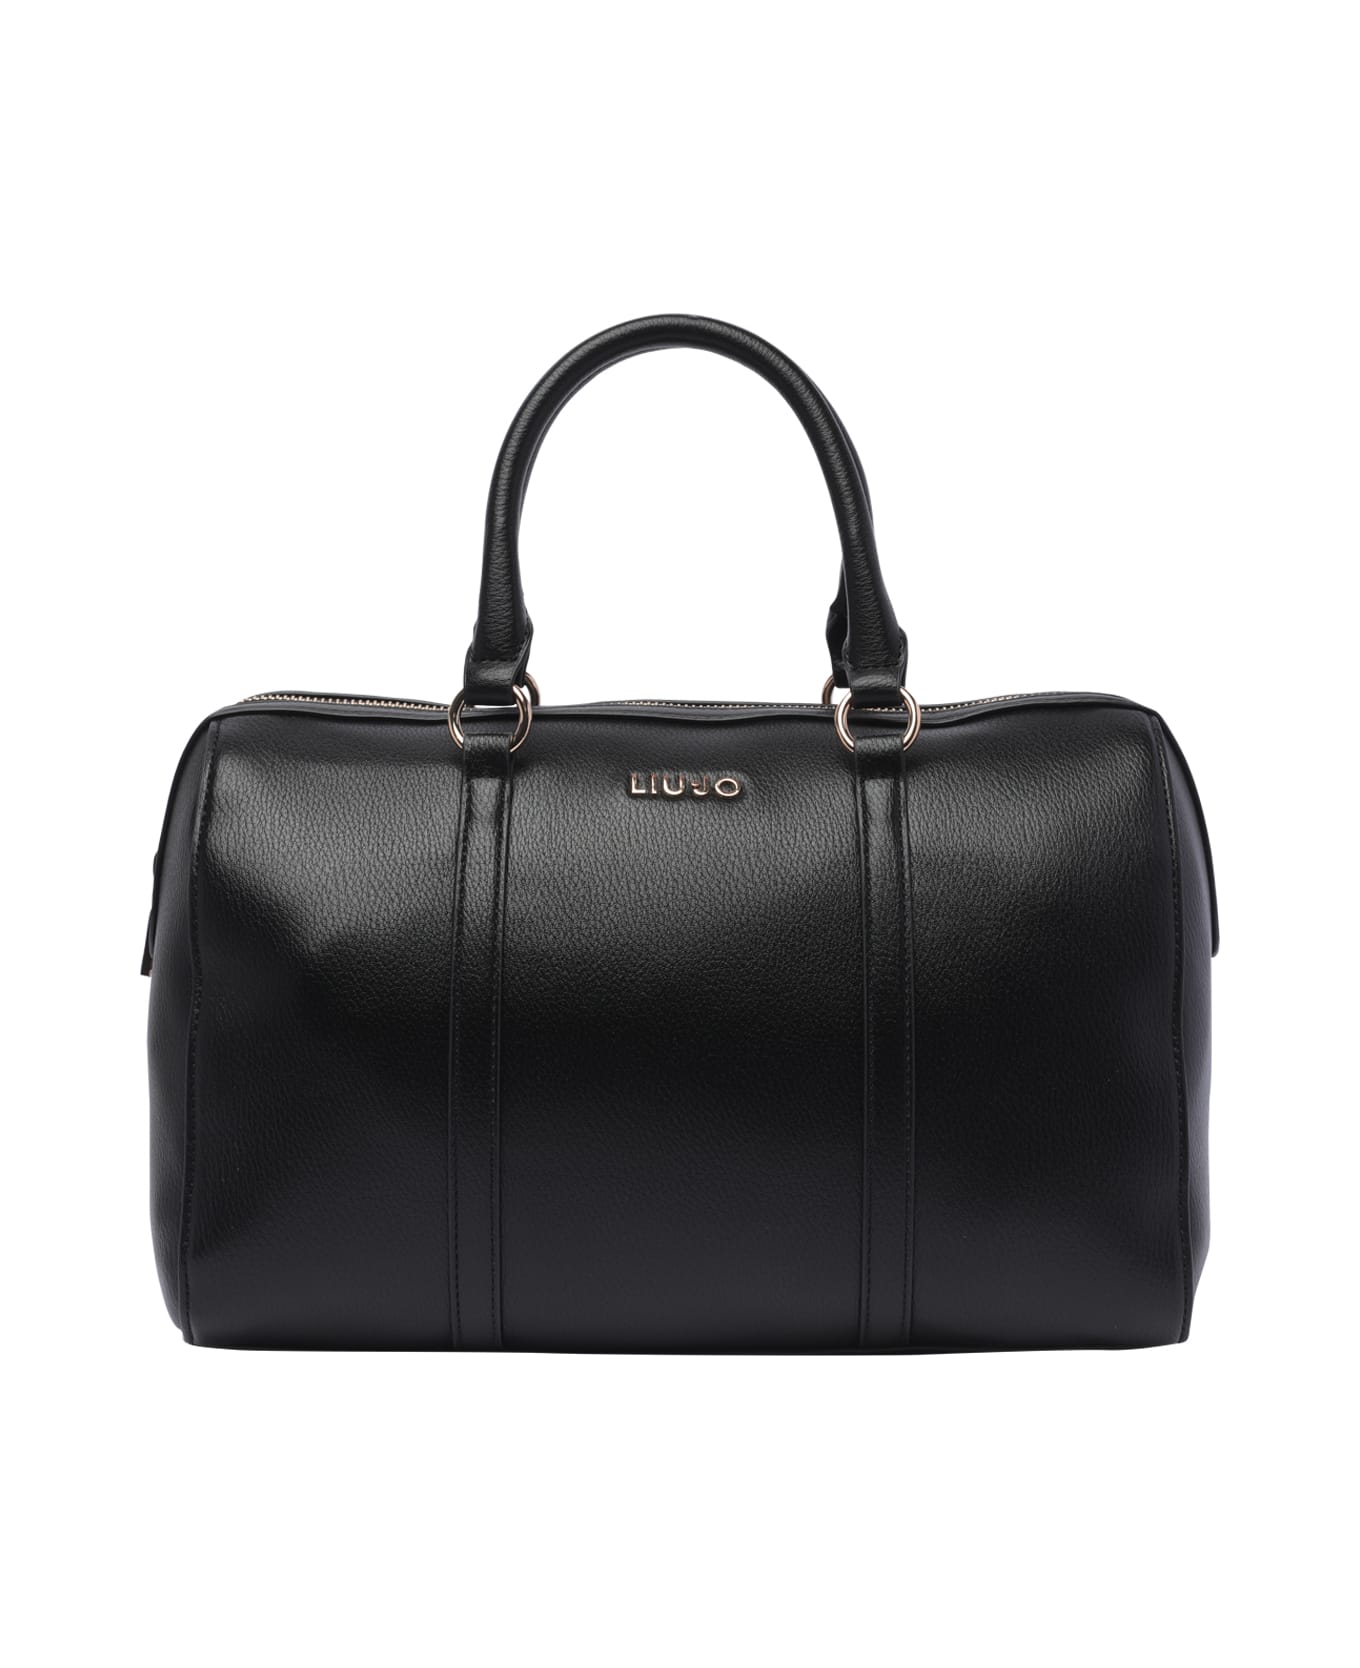 Liu-Jo Logo Handbag - Black トラベルバッグ